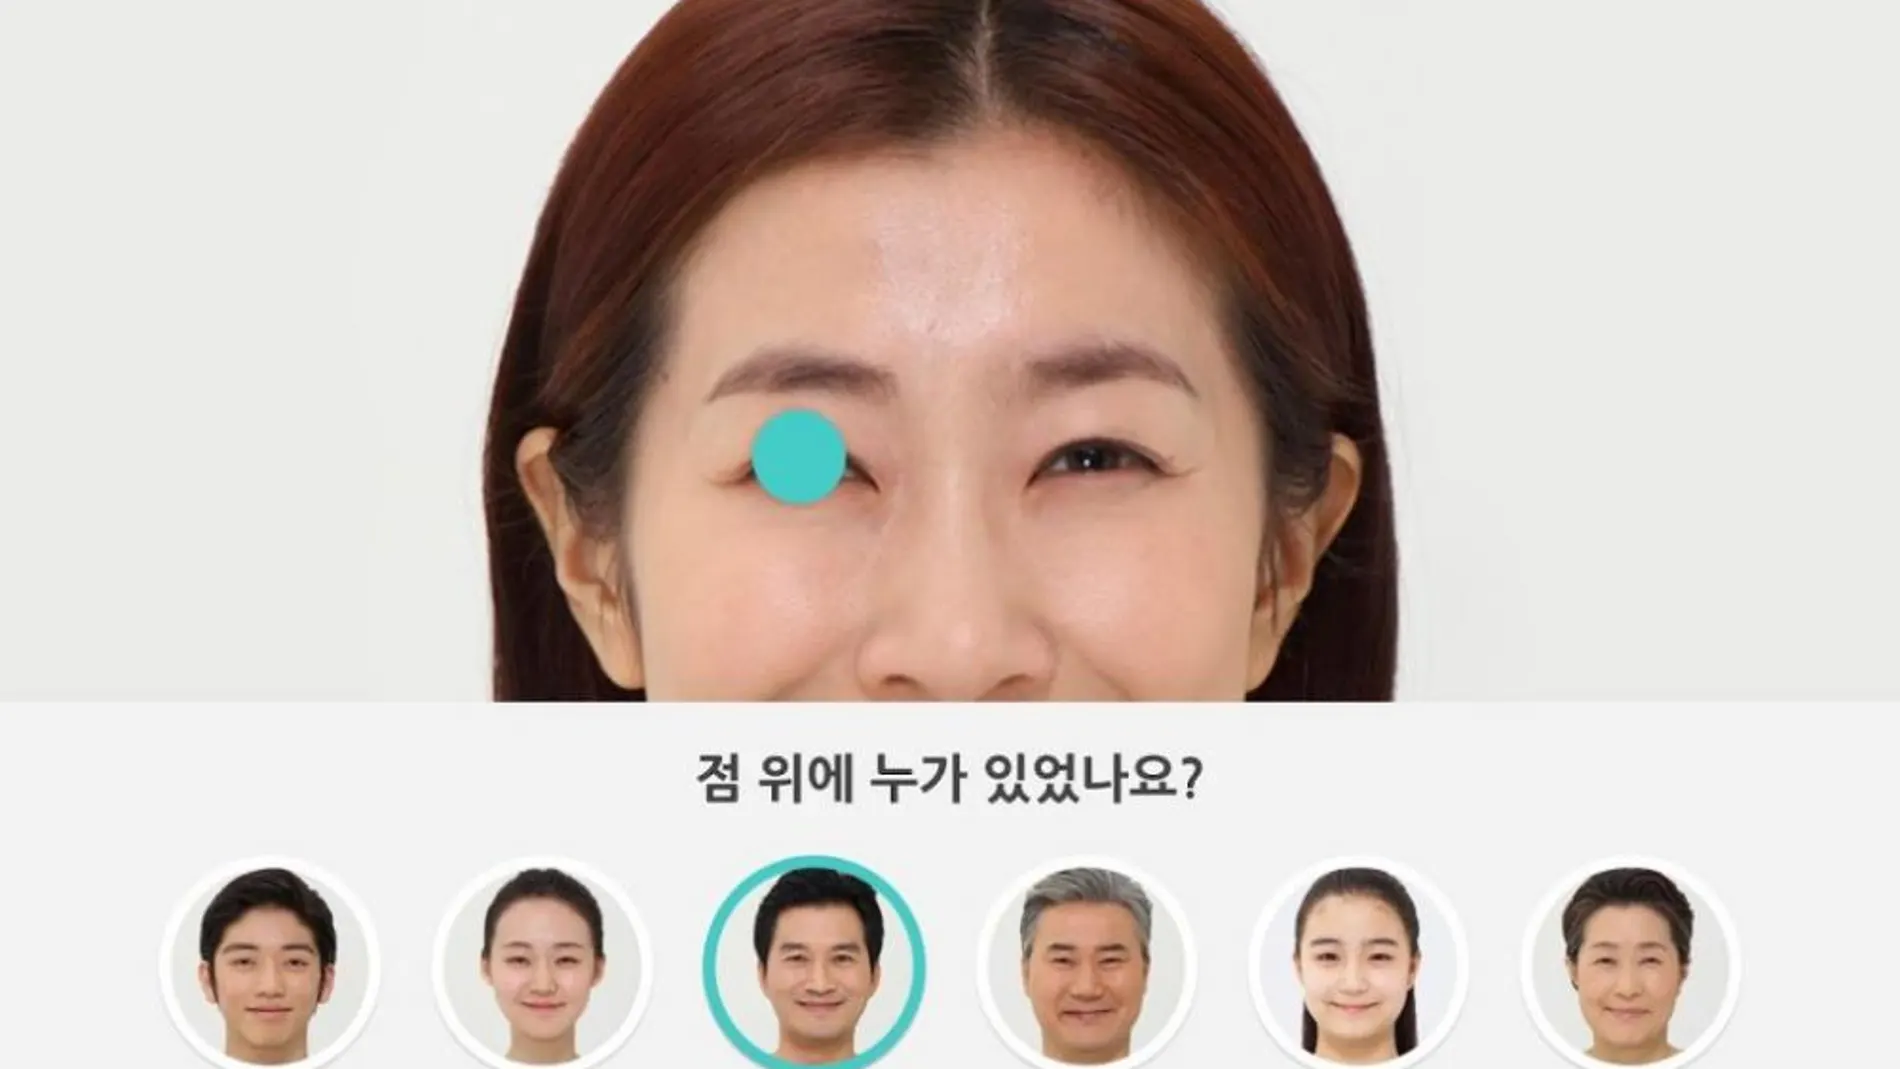 «Look at Me», la app de Samsung para ayudar a comunicarse a los niños autistas